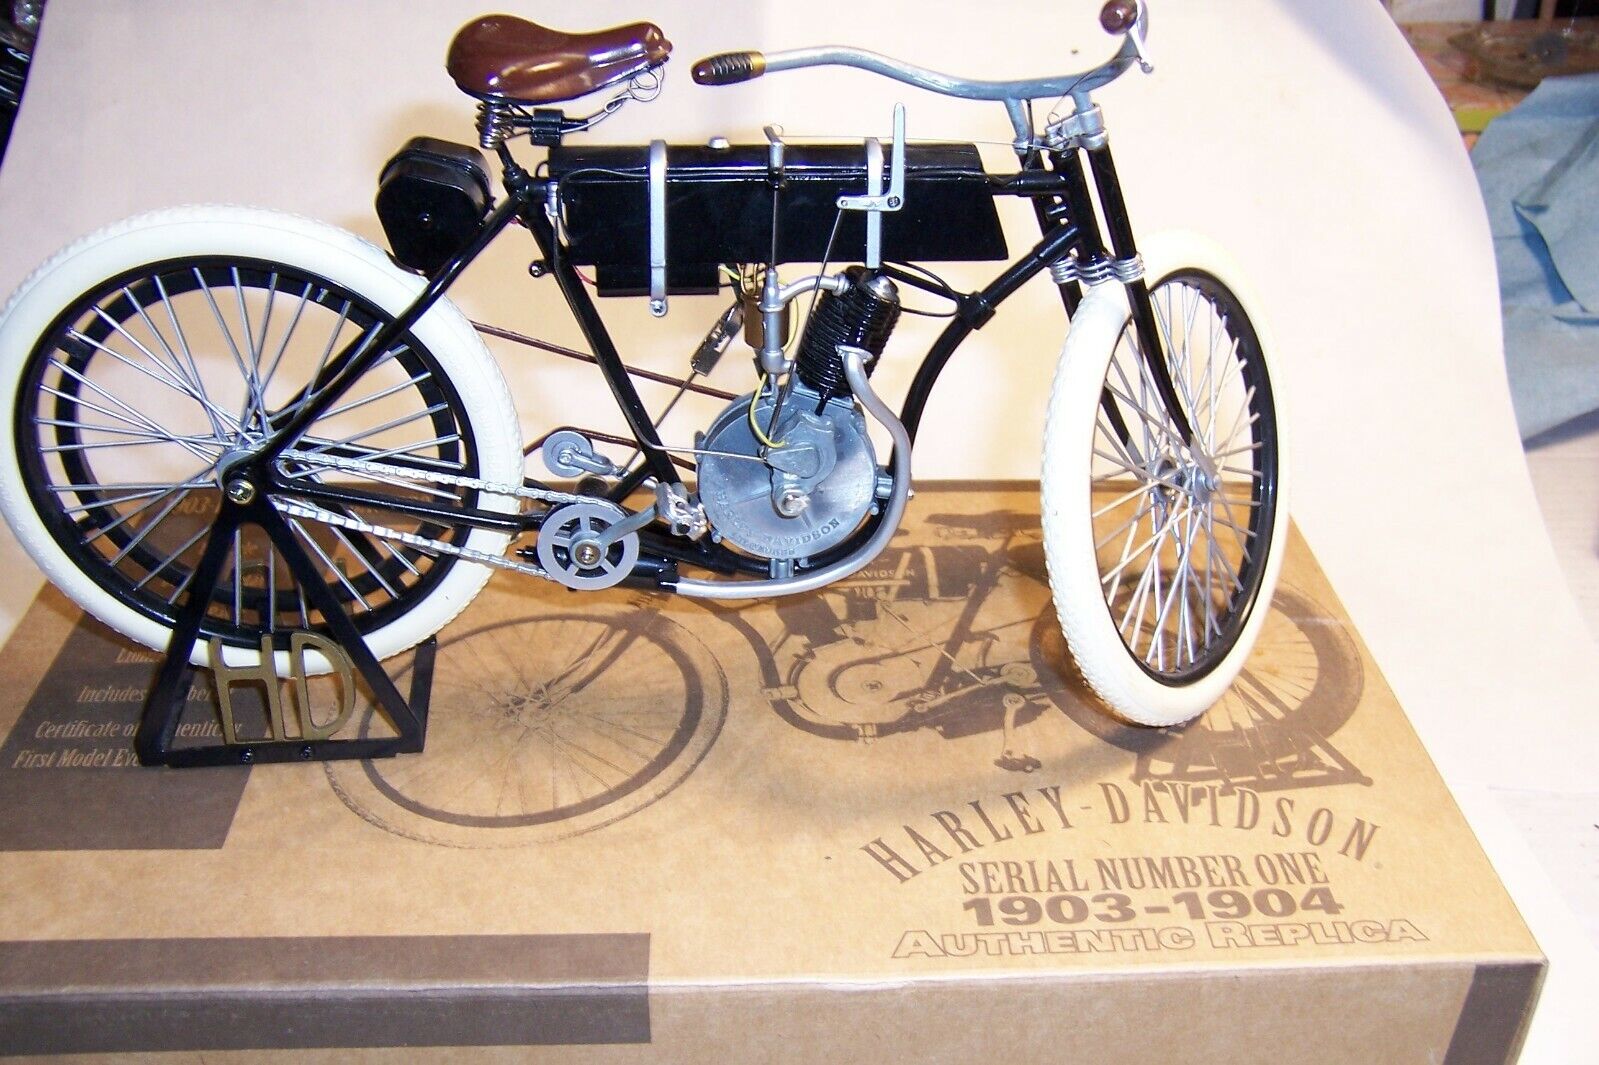 1.6 Die Cast 1903-1904 Harley-Davidson Motorcycle